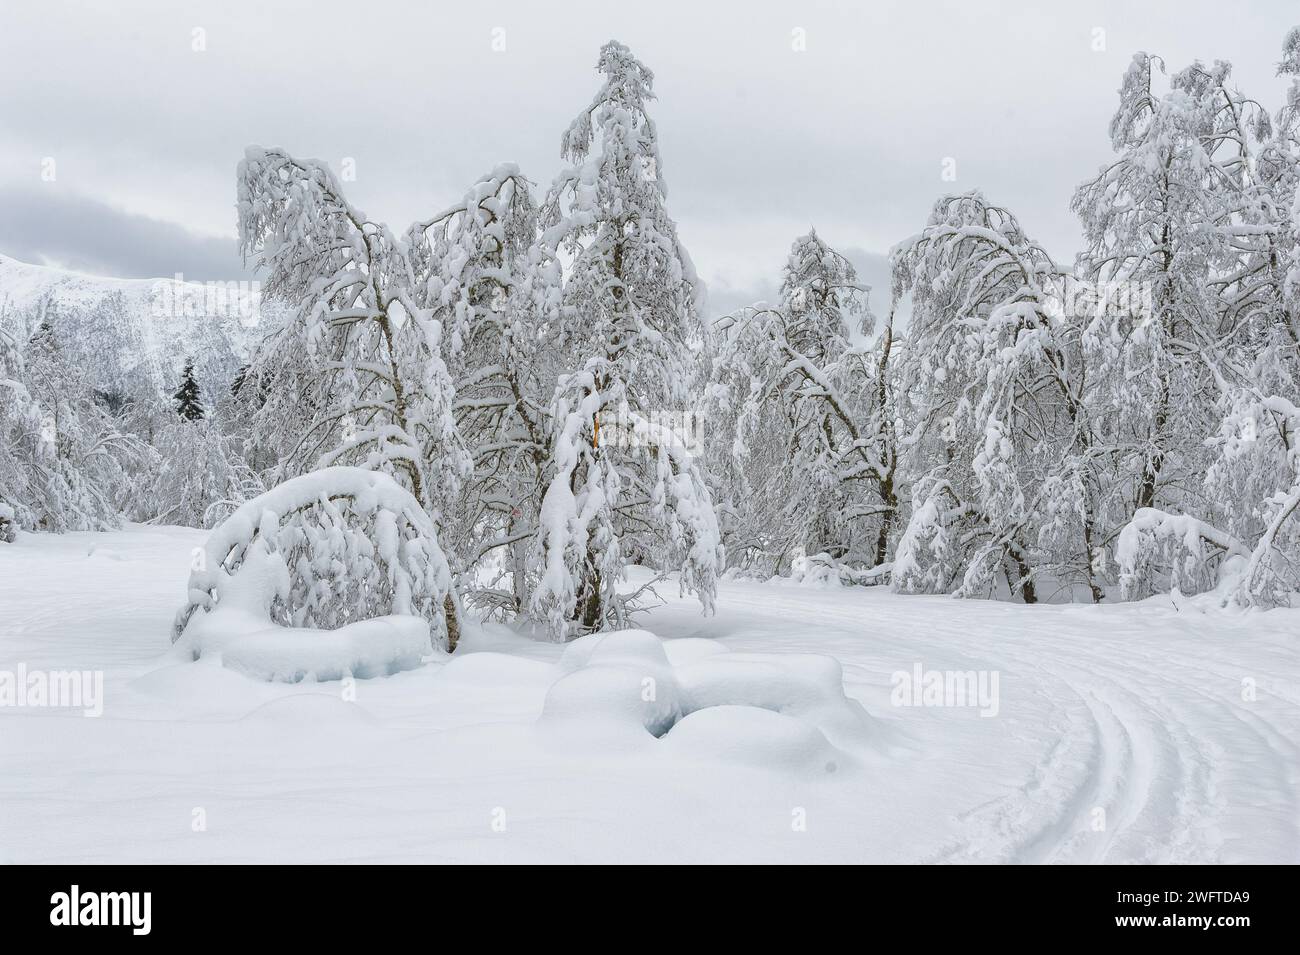 Der Wald verwandelt sich in ein weißes Wunderland, da Schnee die Bäume stark bedeckt und den Boden bedeckt. Eine Skipiste, die vorbeizieht Stockfoto